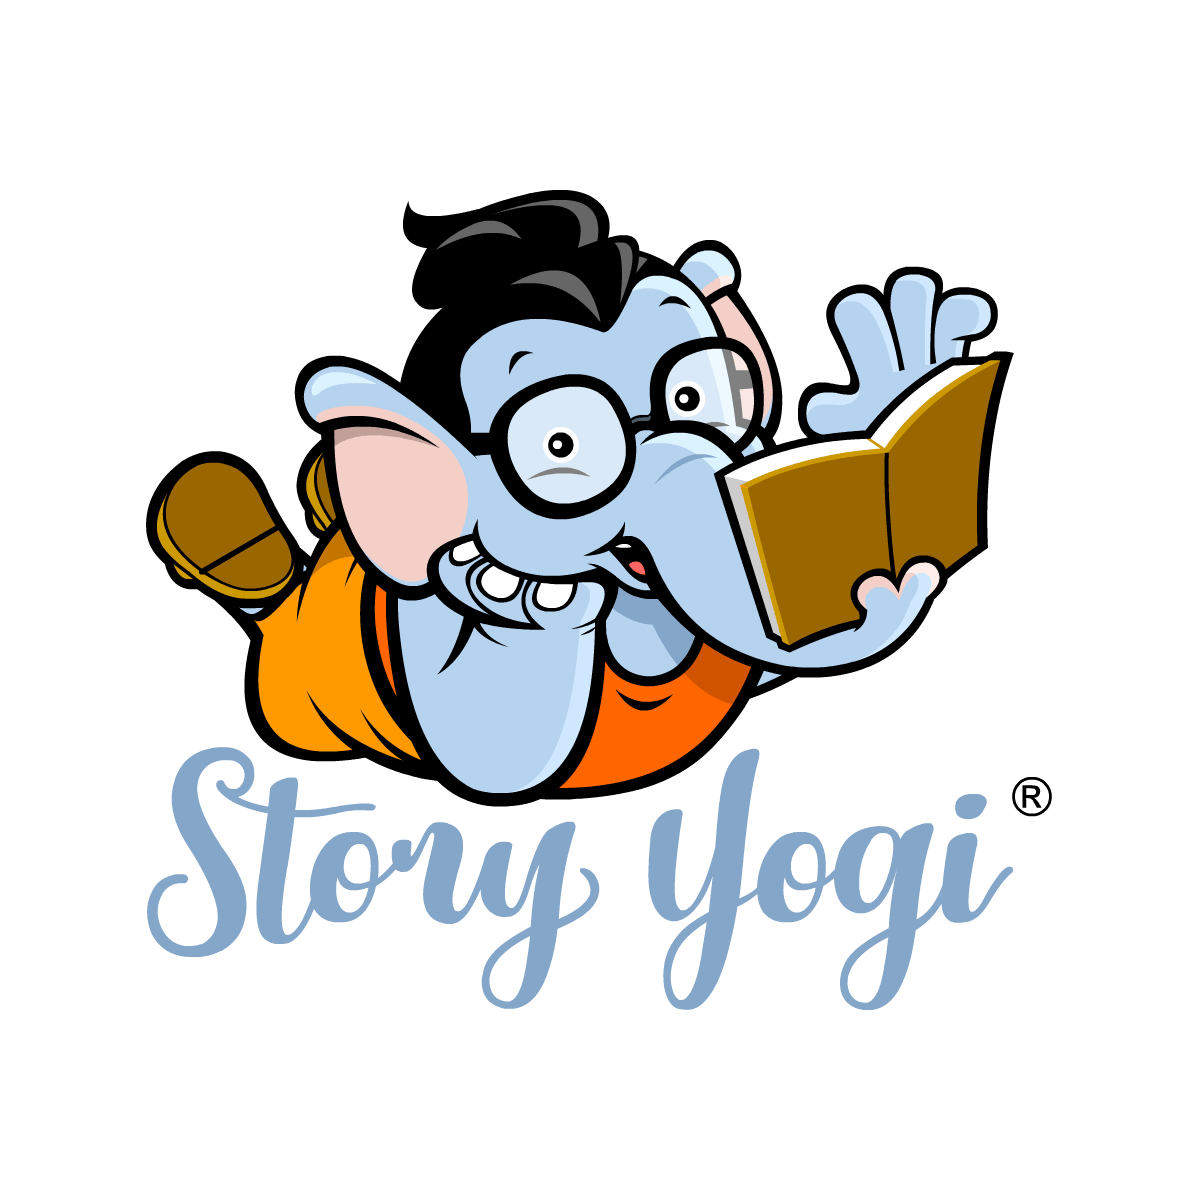 Story Yogi